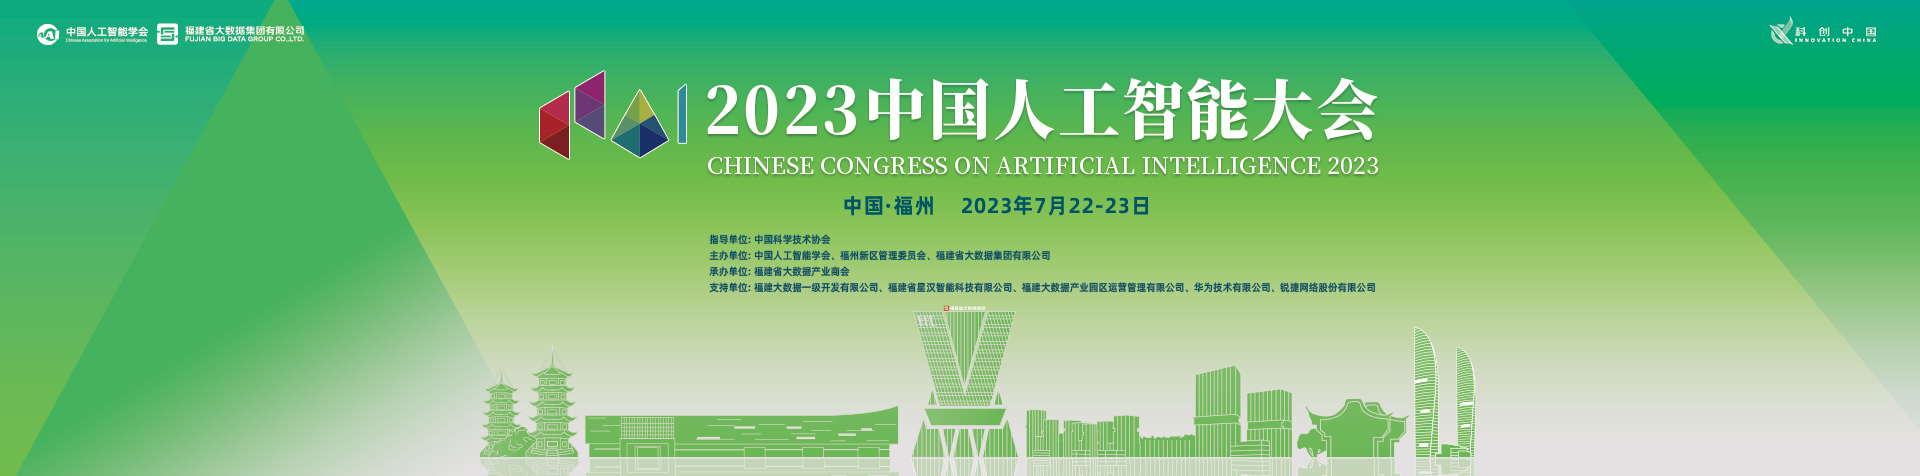 2023杭州全球人工智能技术大会